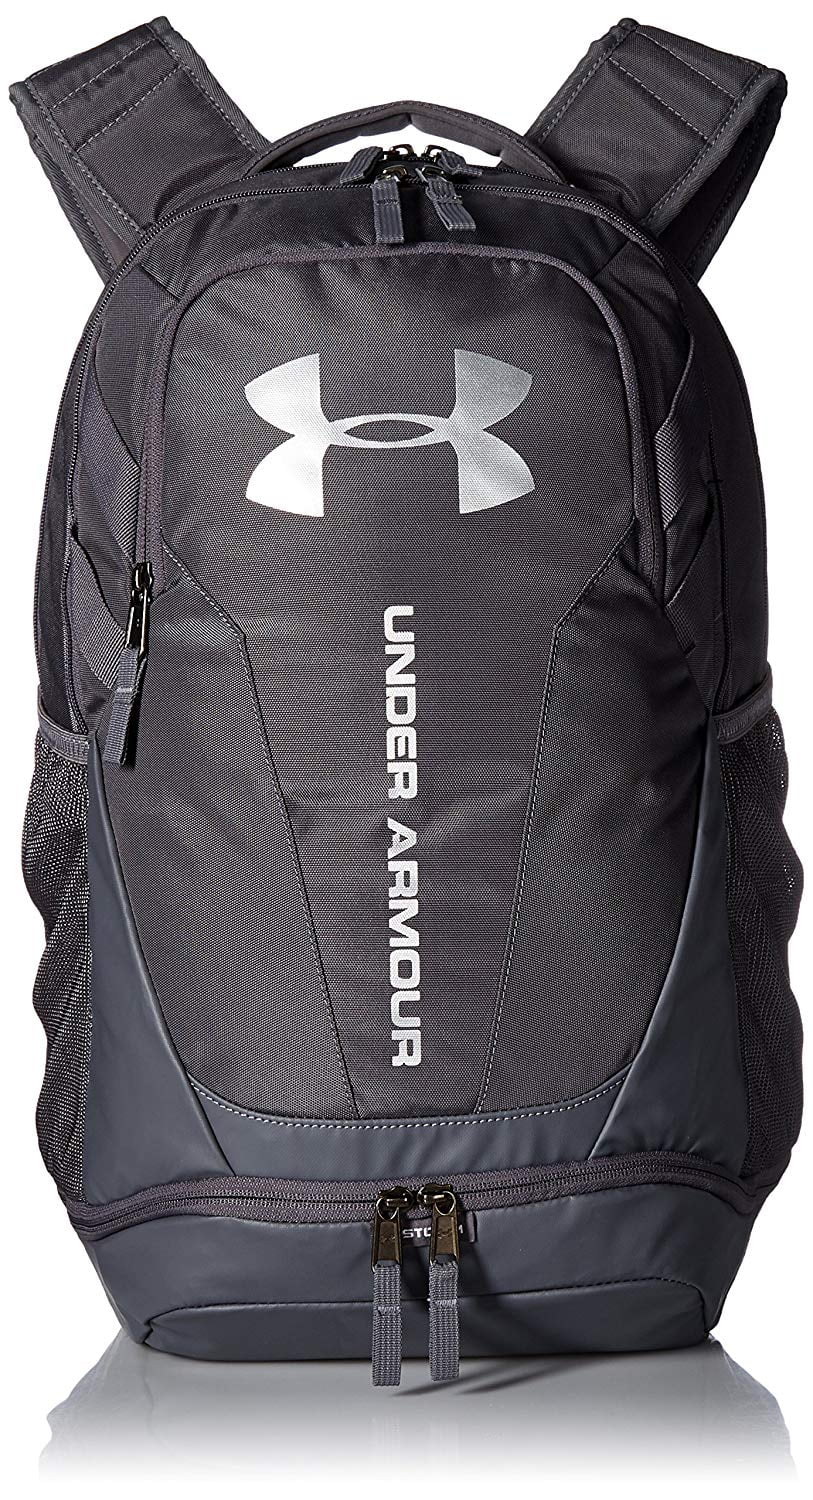 ua 3.0 backpack